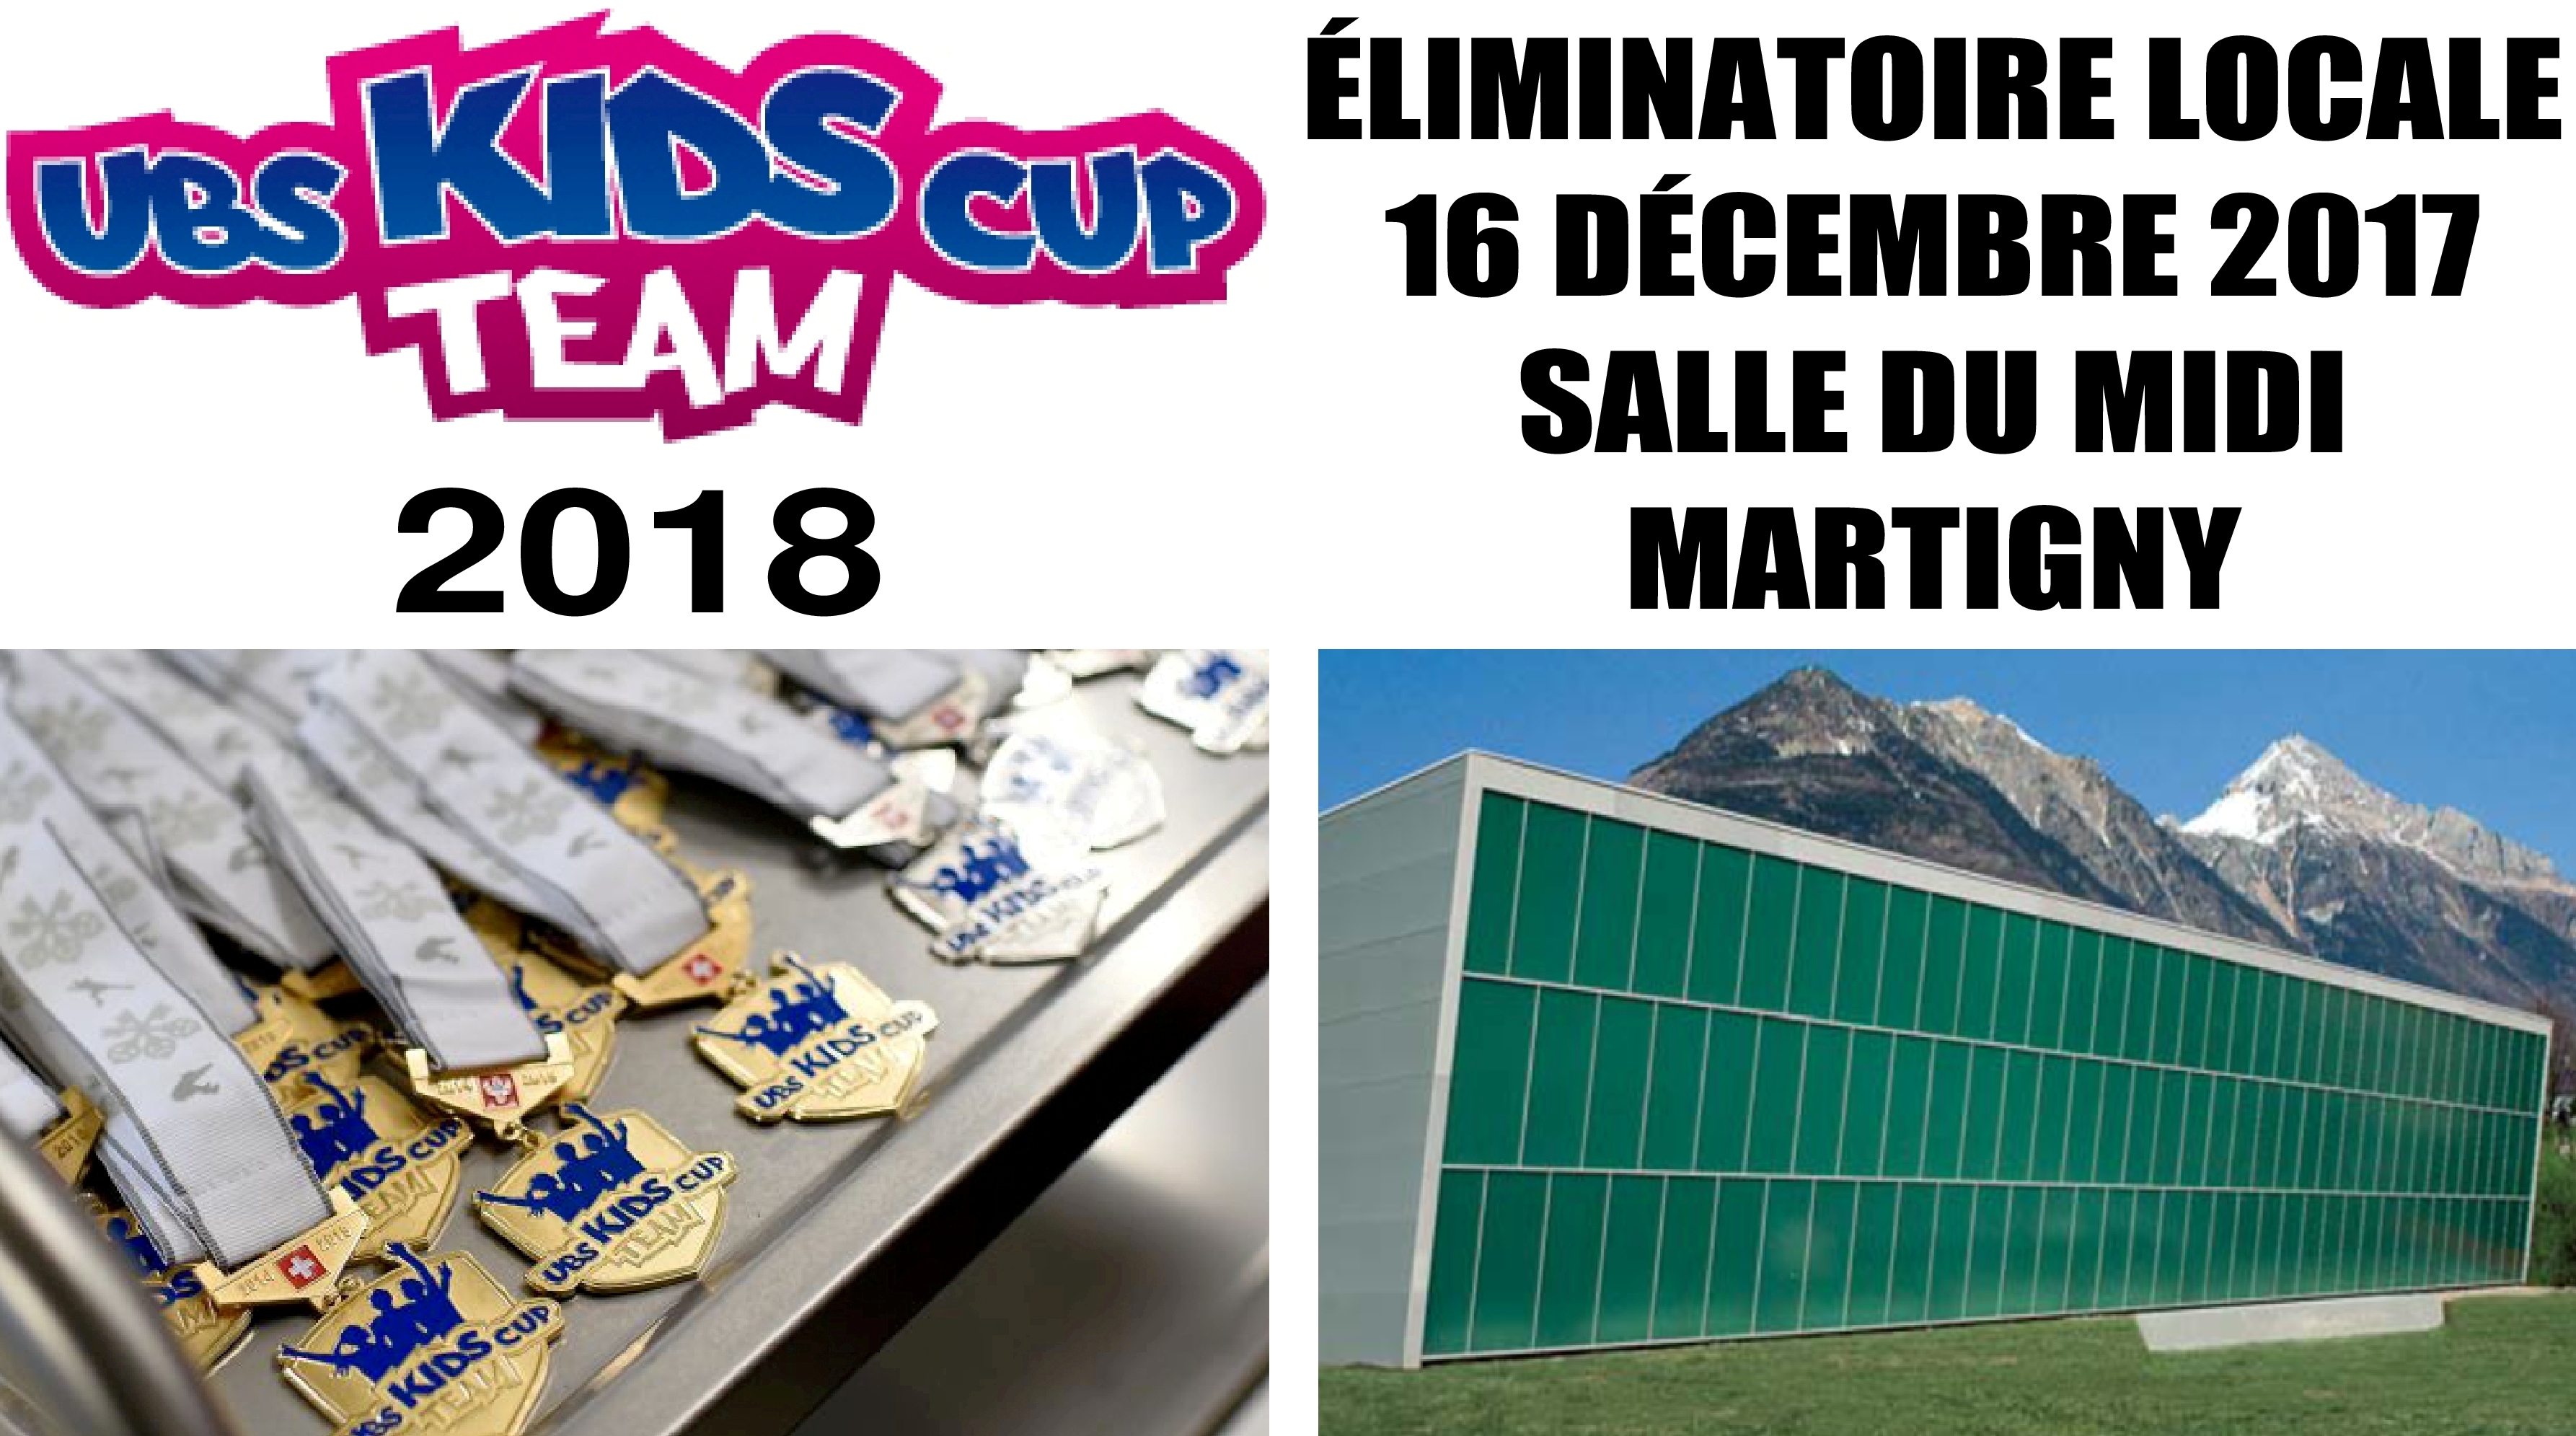 Eliminatoire UBS Kids Cup Team à Martigny